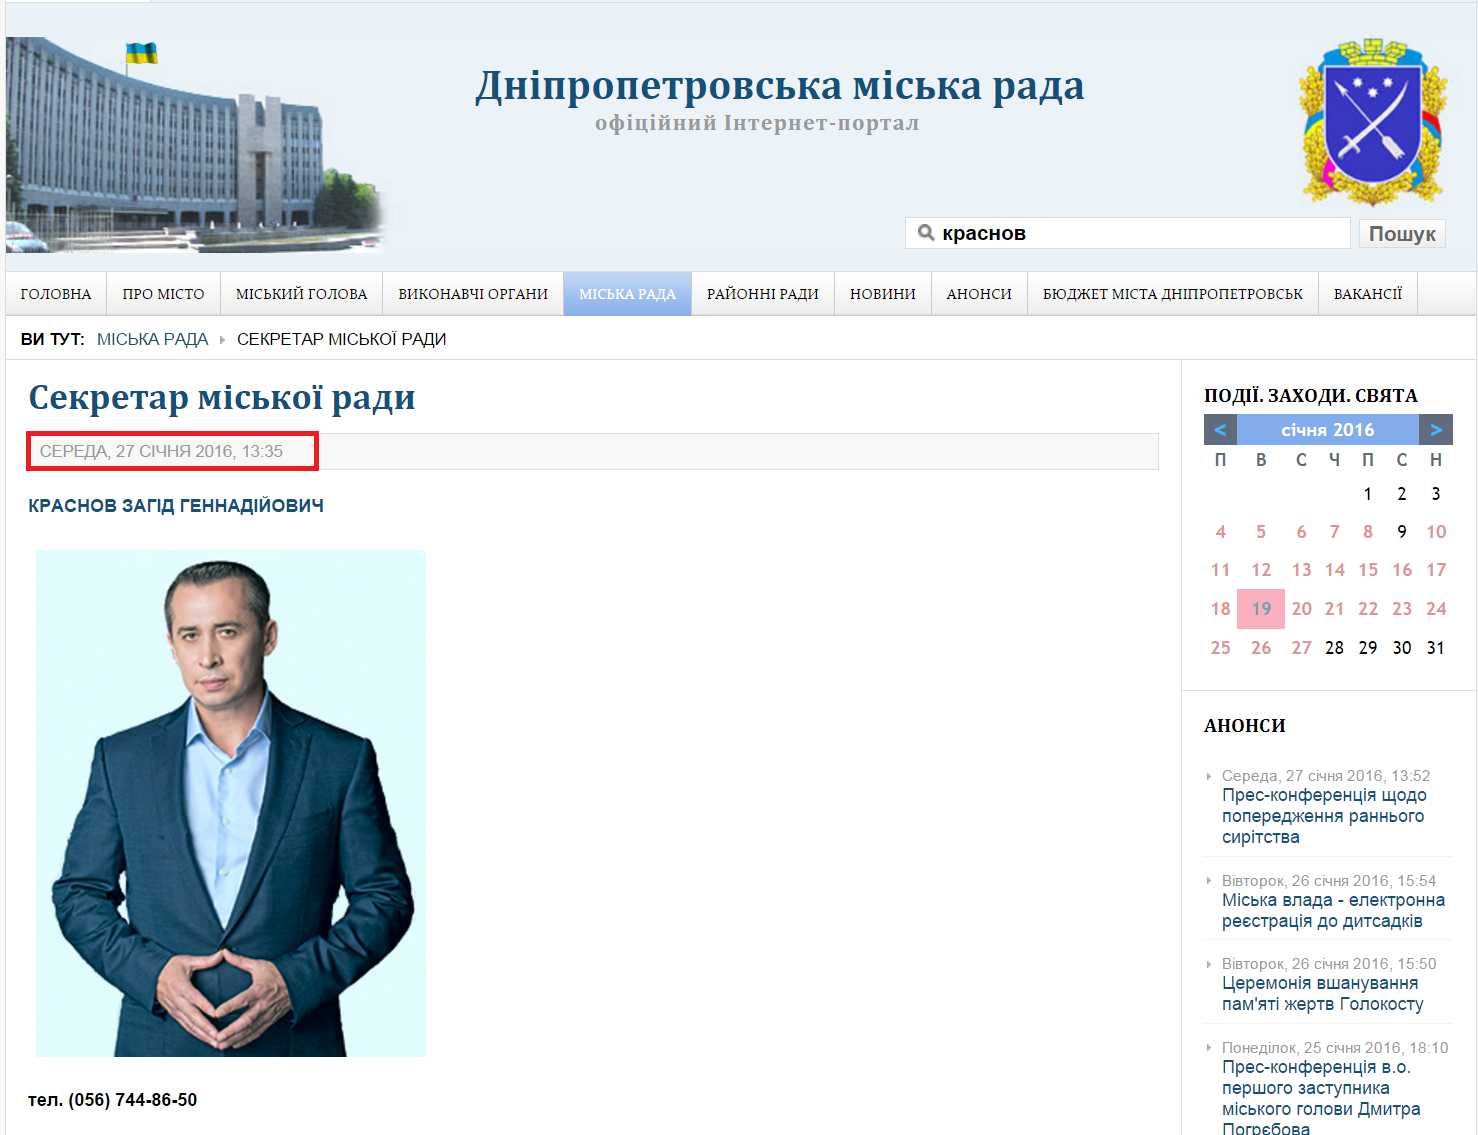 http://dniprorada.gov.ua/sekretar-miskoi-radi-2016